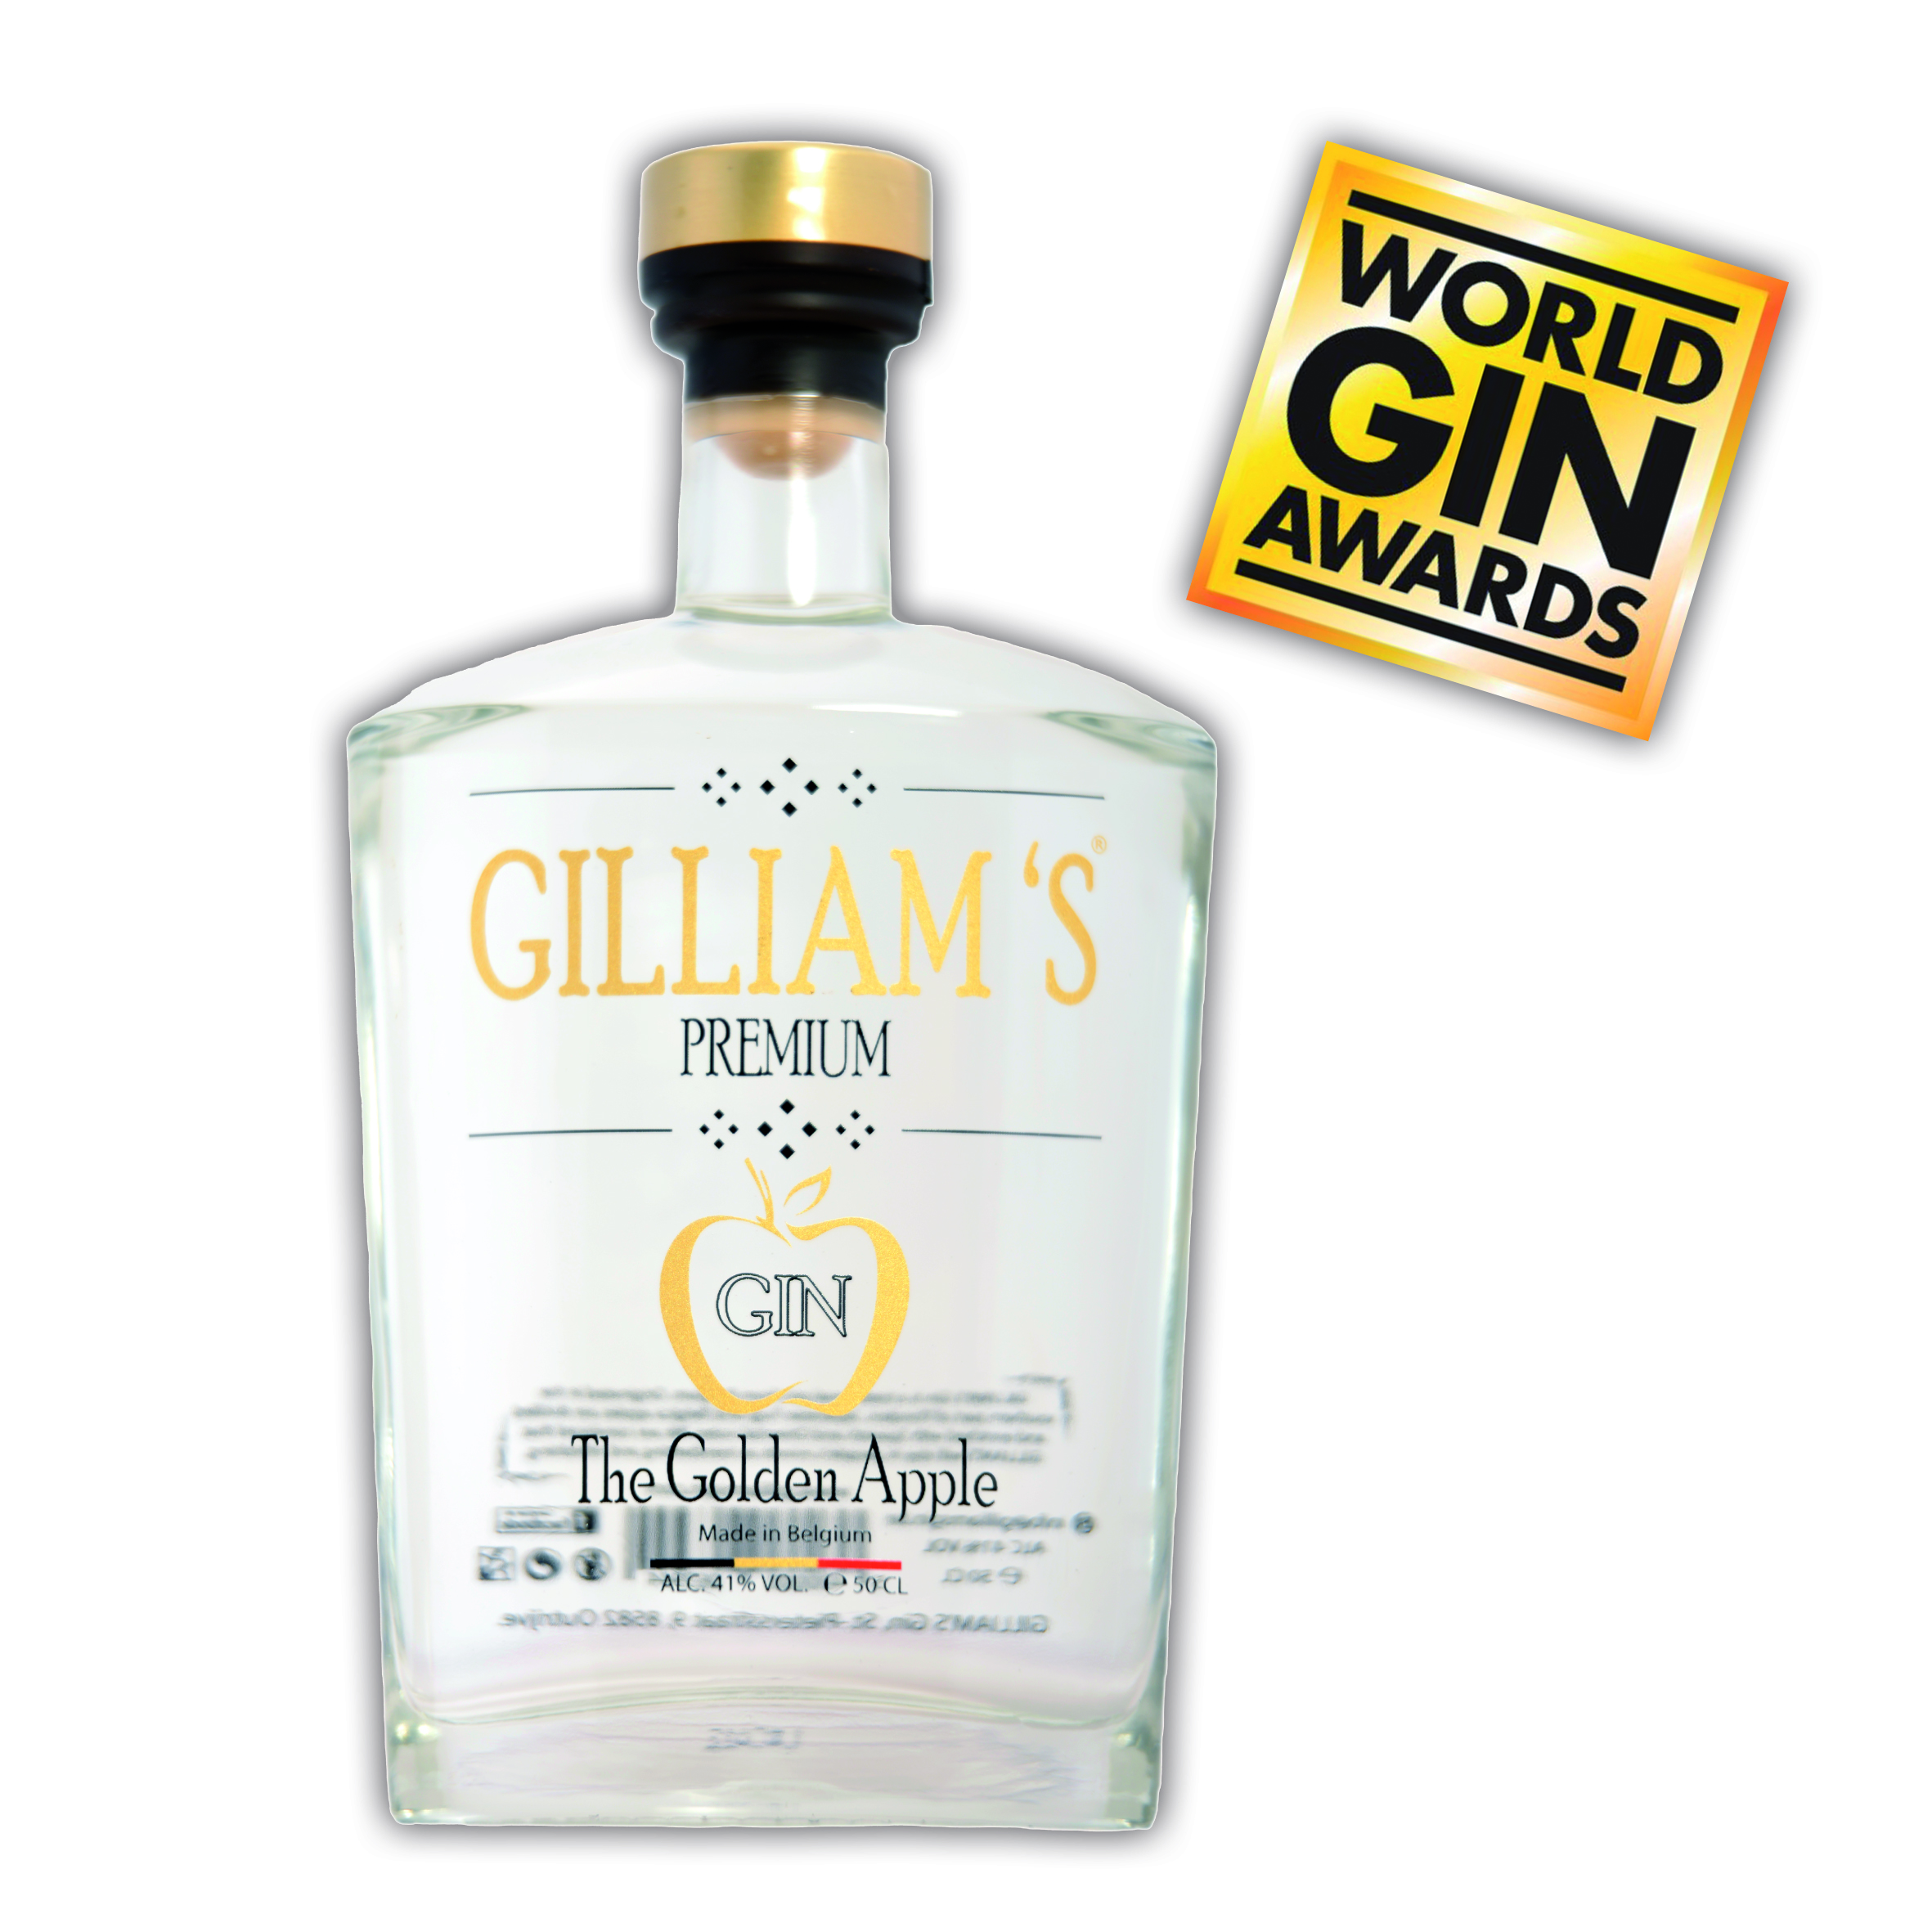 Gilliams Gin / 0,5l 41%Vol / World Gin Award Winner 2017 / Golden Apple